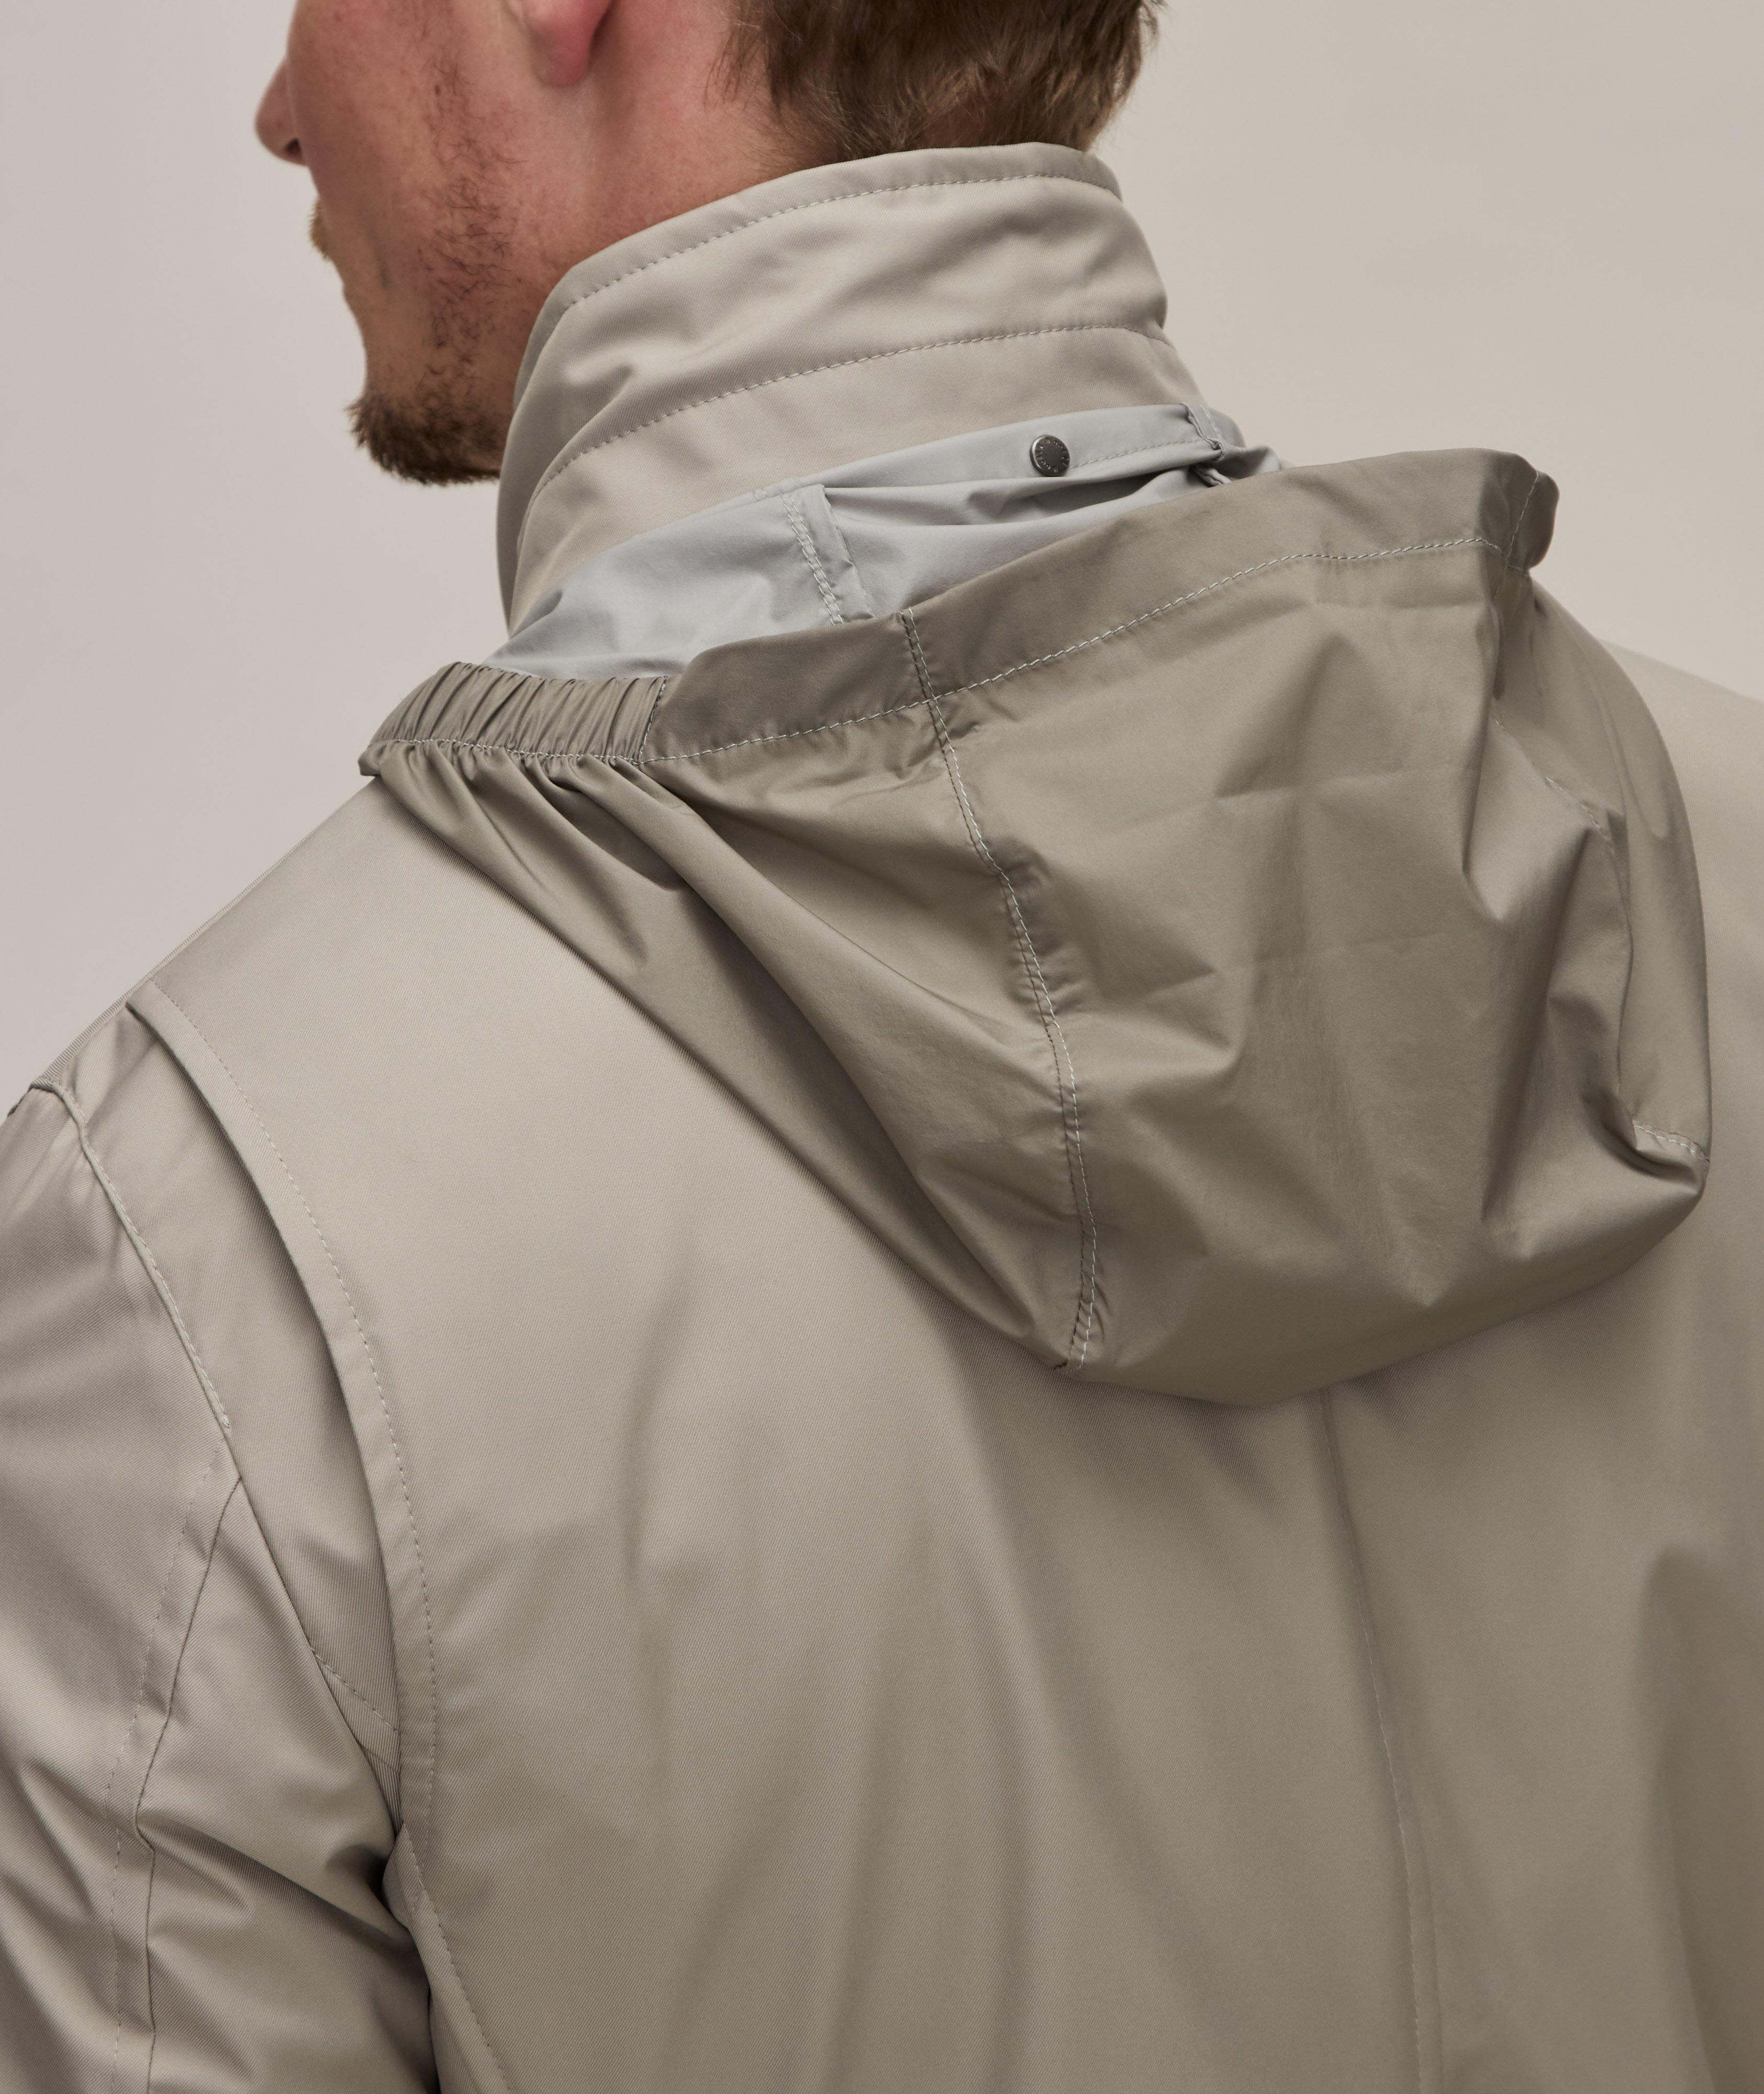 Duca-Gf Water-Resistant Rain Jacket